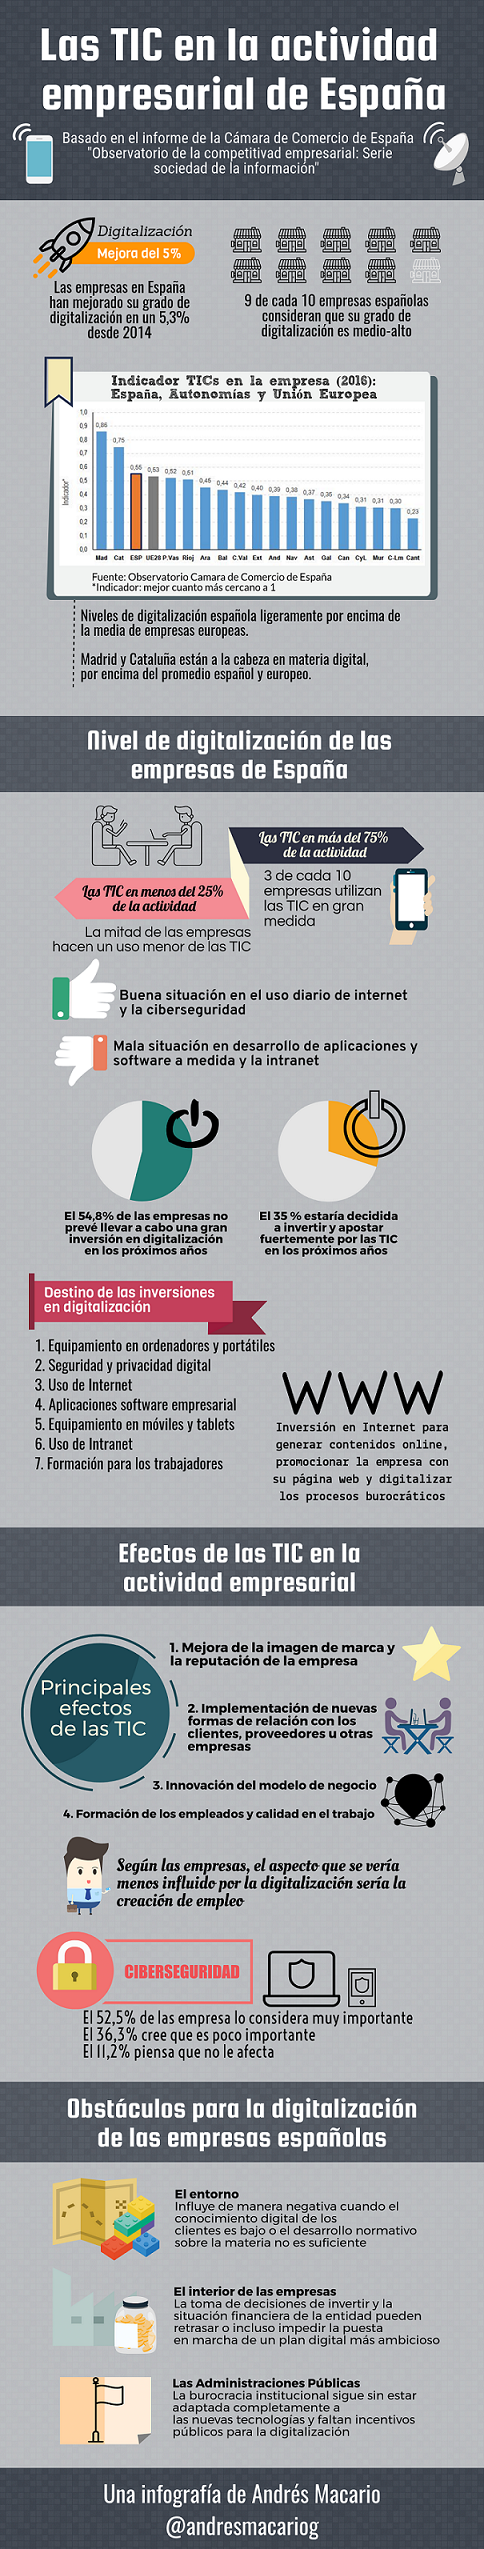 Las TIC en la actividad empresarial de España - Infografía Andrés Macario